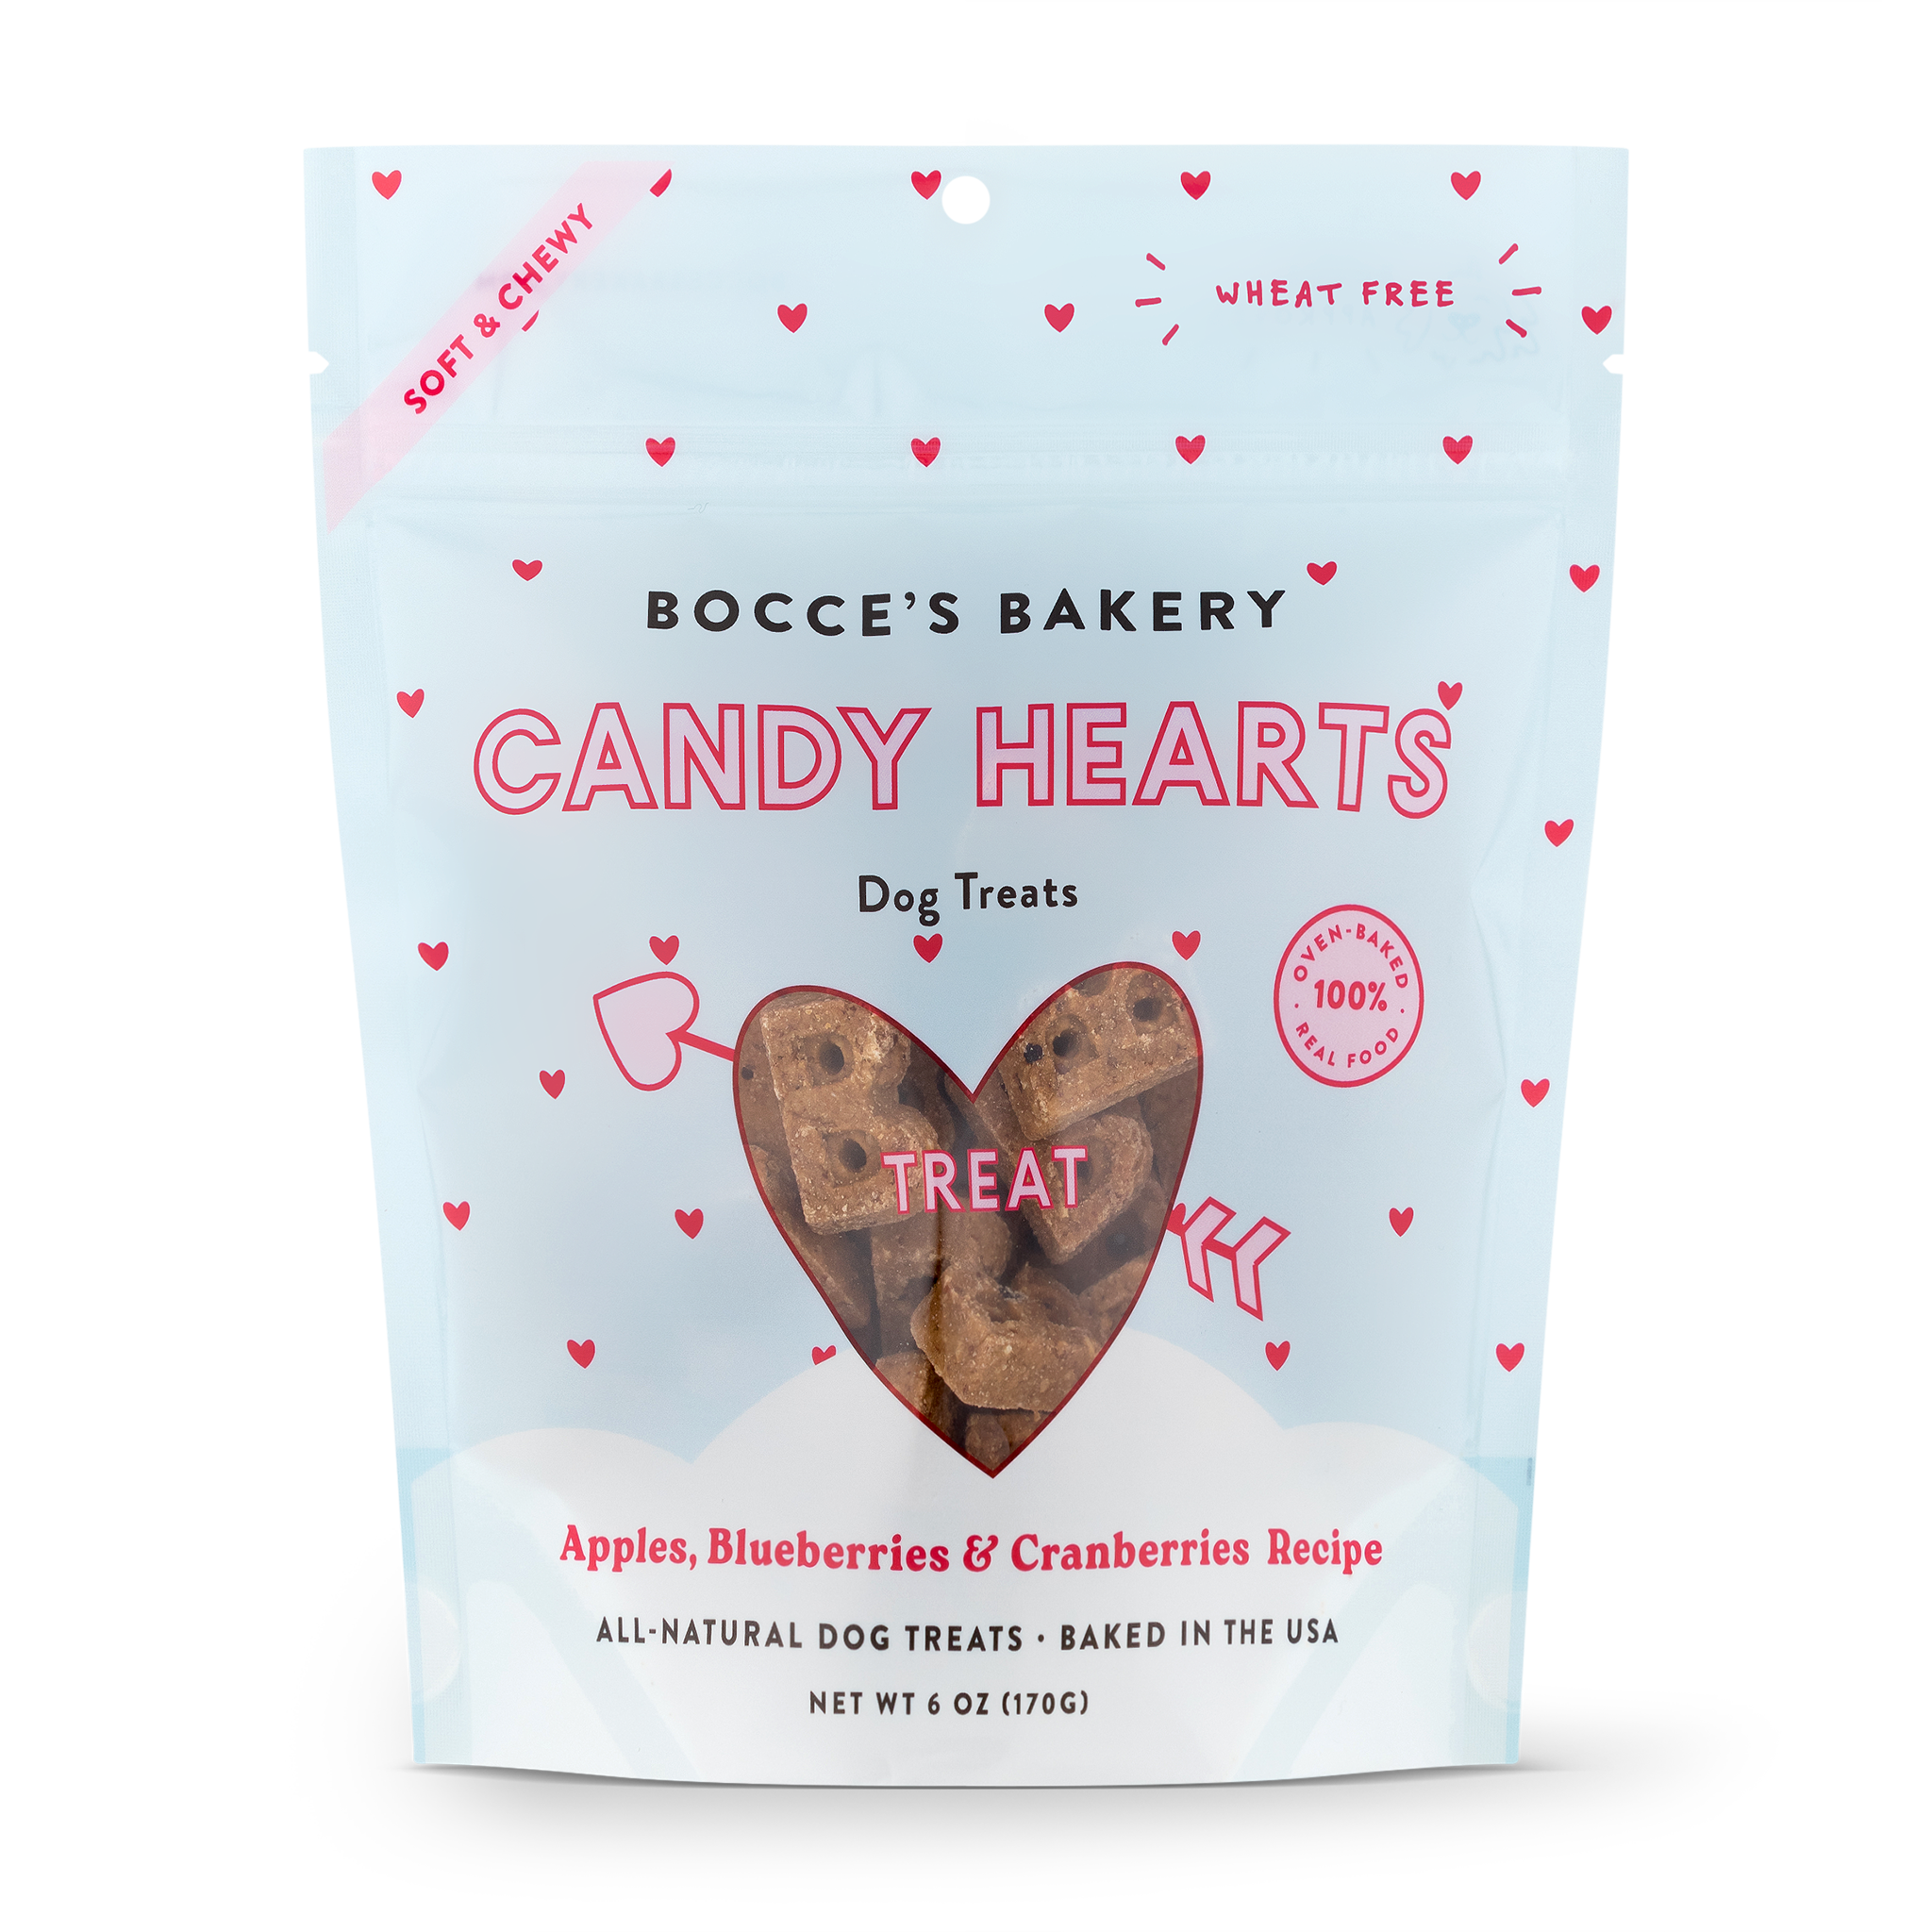 Bocce's Bakery Candy Hearts, $6.50 @pureearthpets.com